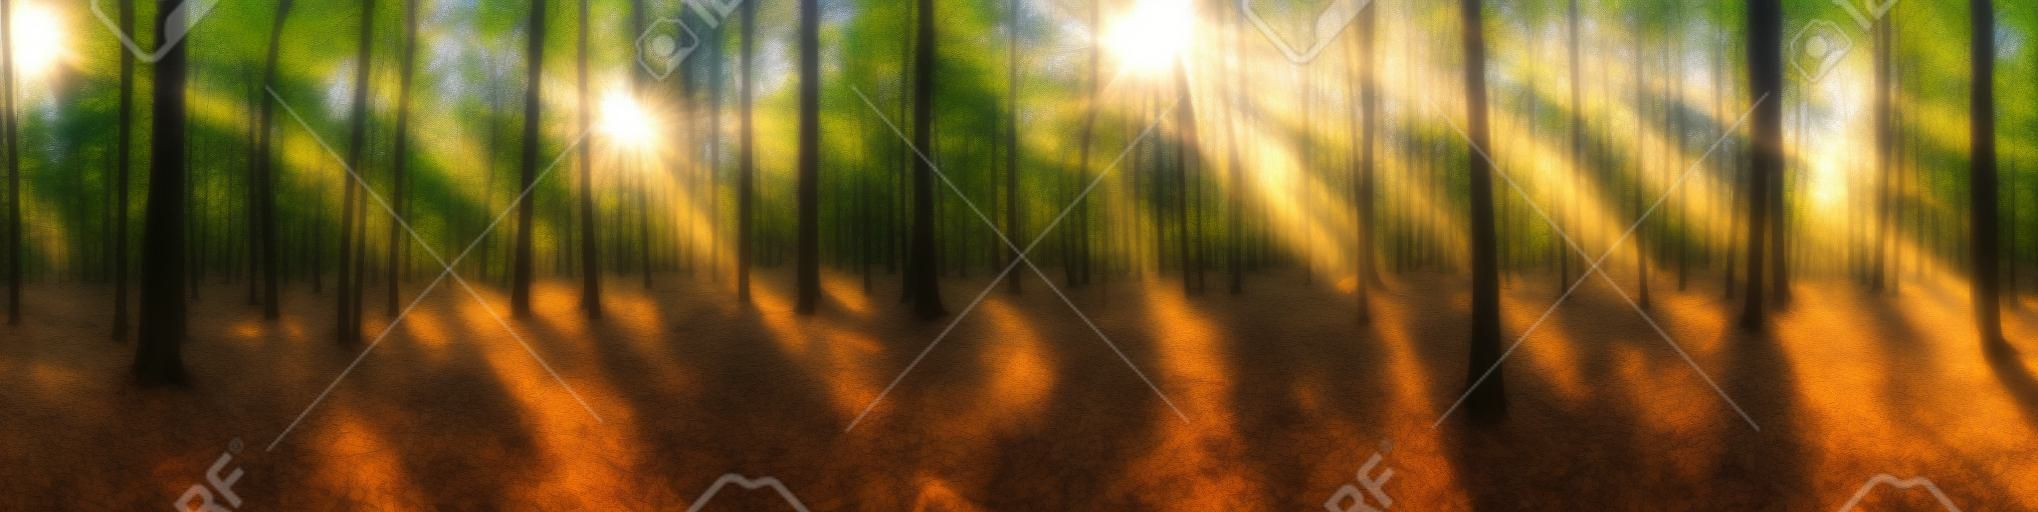 Prachtig bos panorama met heldere zon die door de bomen schijnt